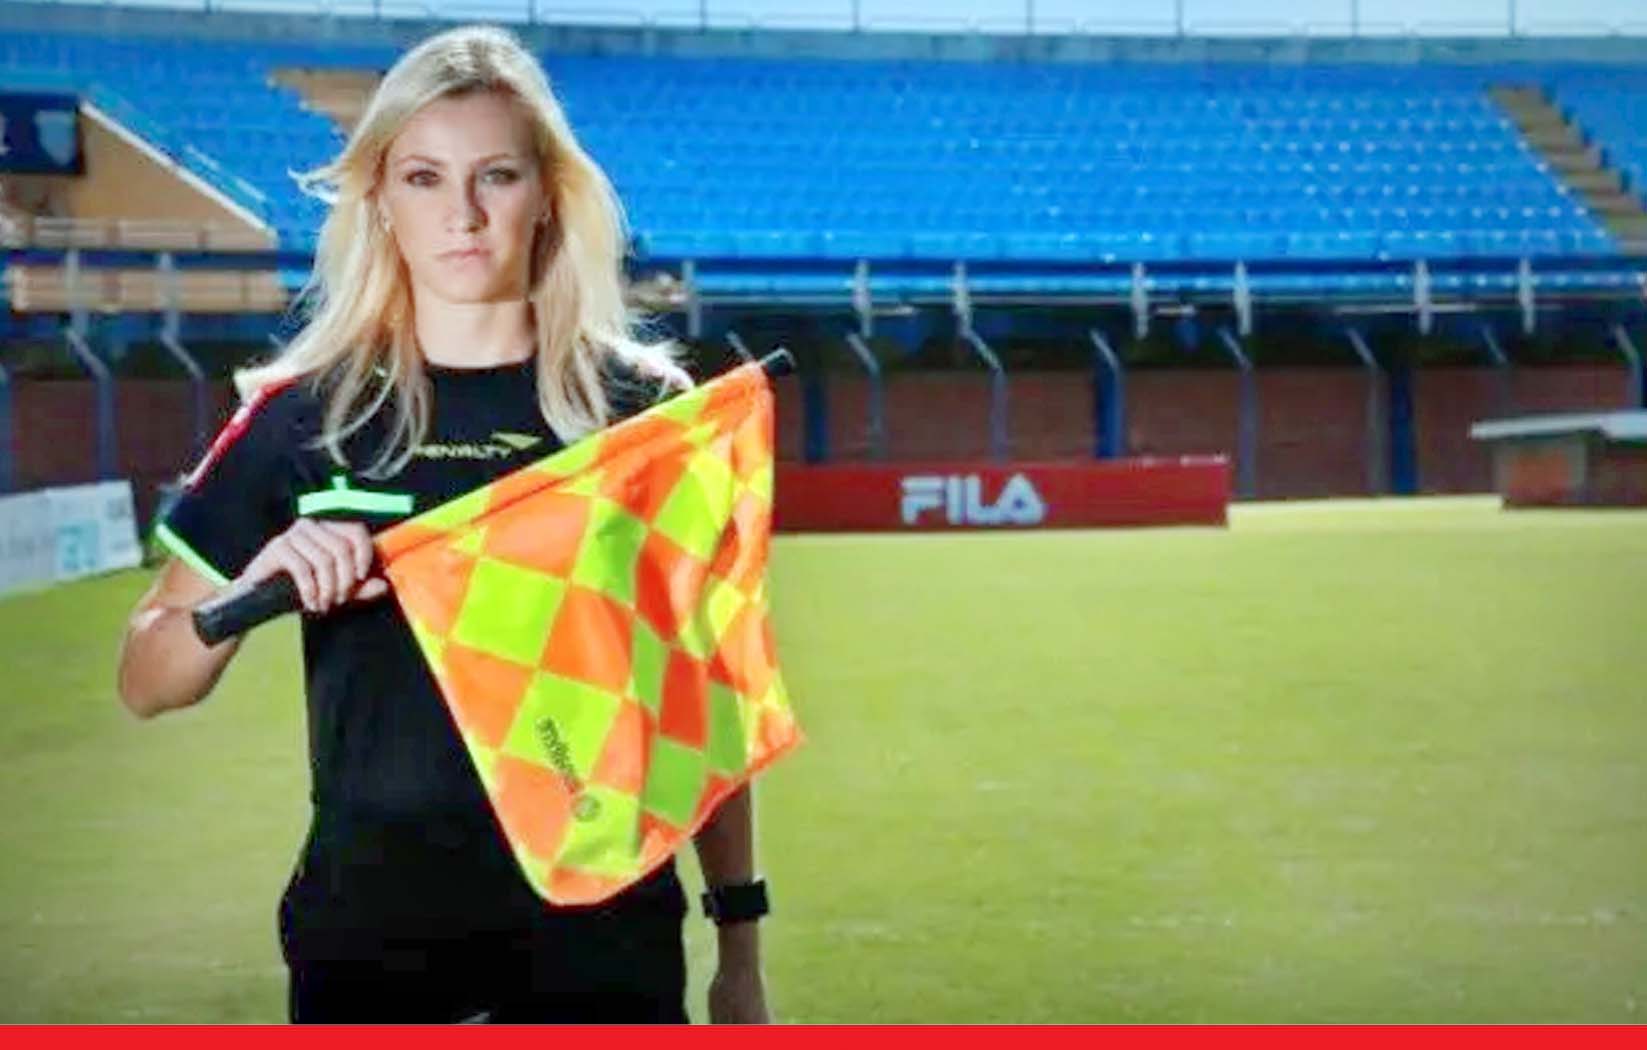 FIFA World Cup : फुटबॉल के सबसे बड़े टूर्नामेंट में पहली बार रैफरी की भूमिका में महिलाएं नजर आएंगी